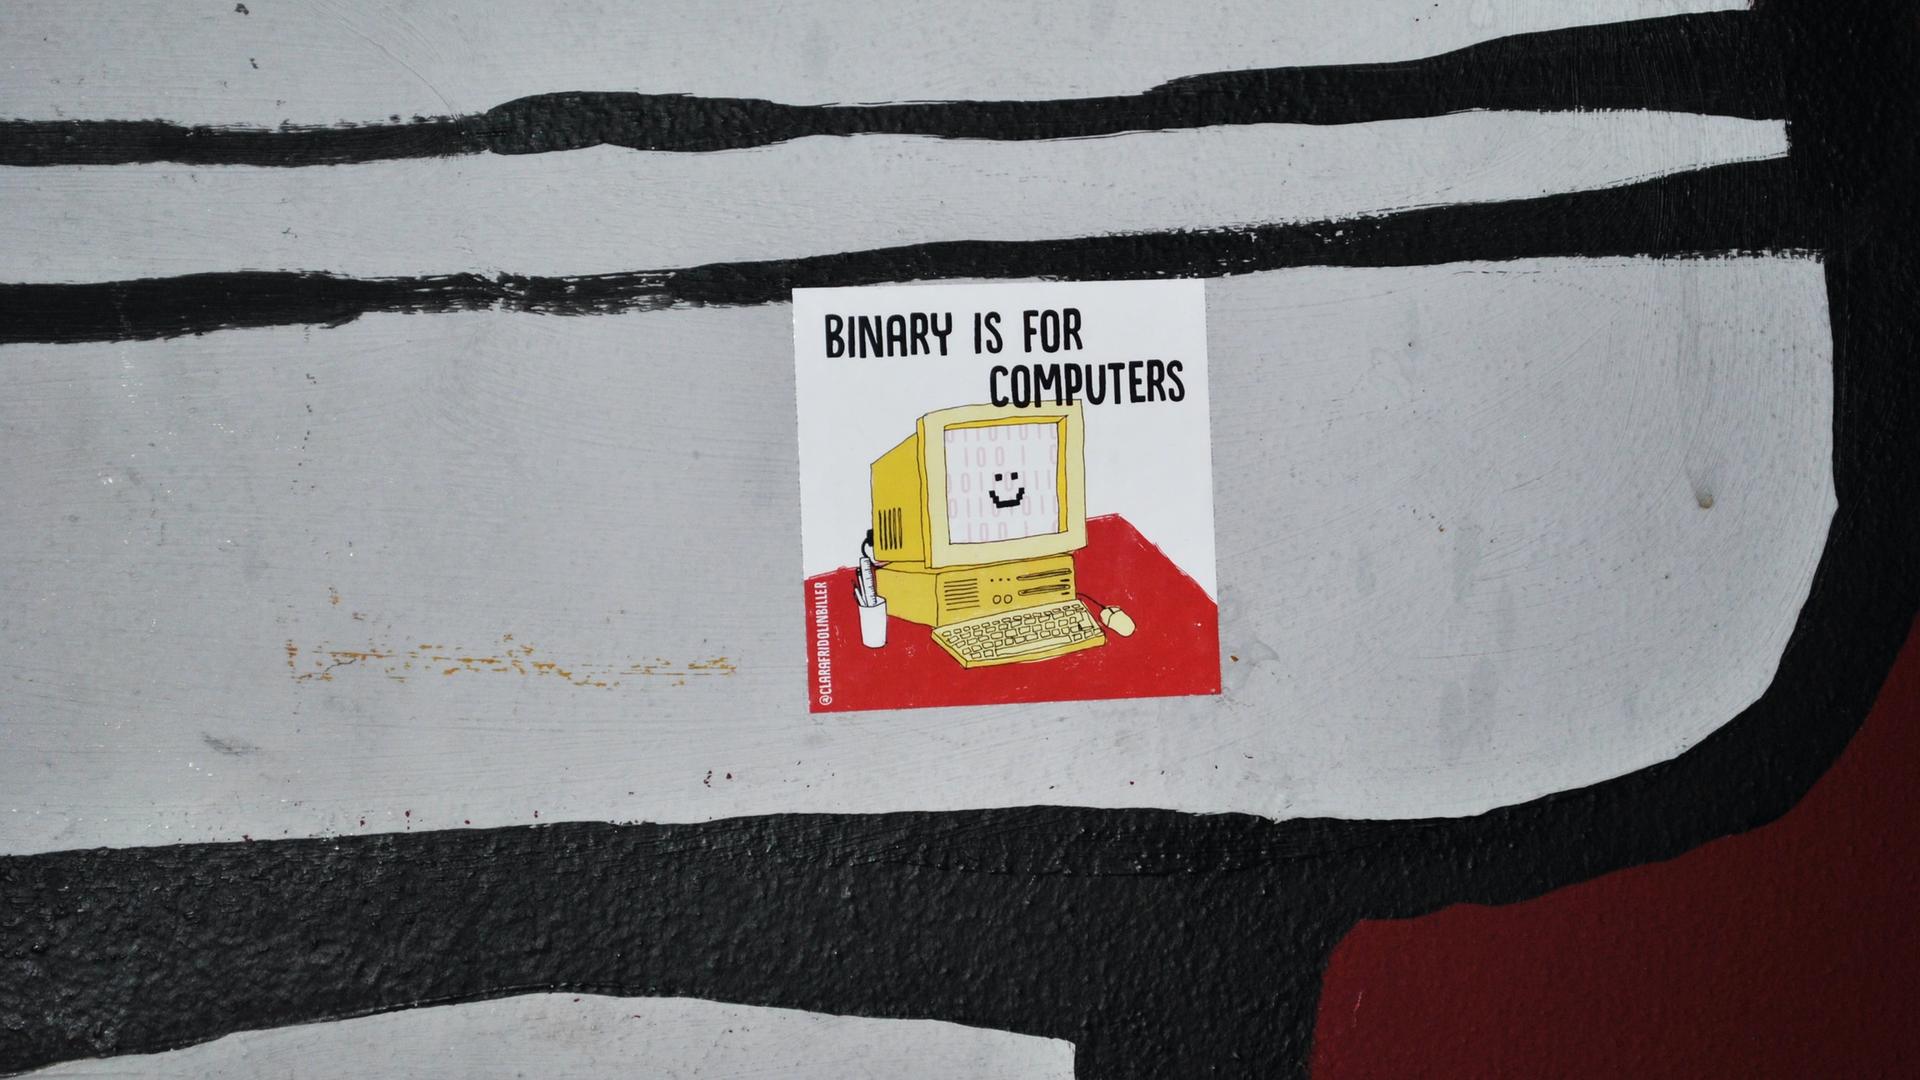 Auf einer Oberfläche klebt ein Sticker mit der Illustration eines lächelnden Computers und der Aufschrift "Binary is for Computers".